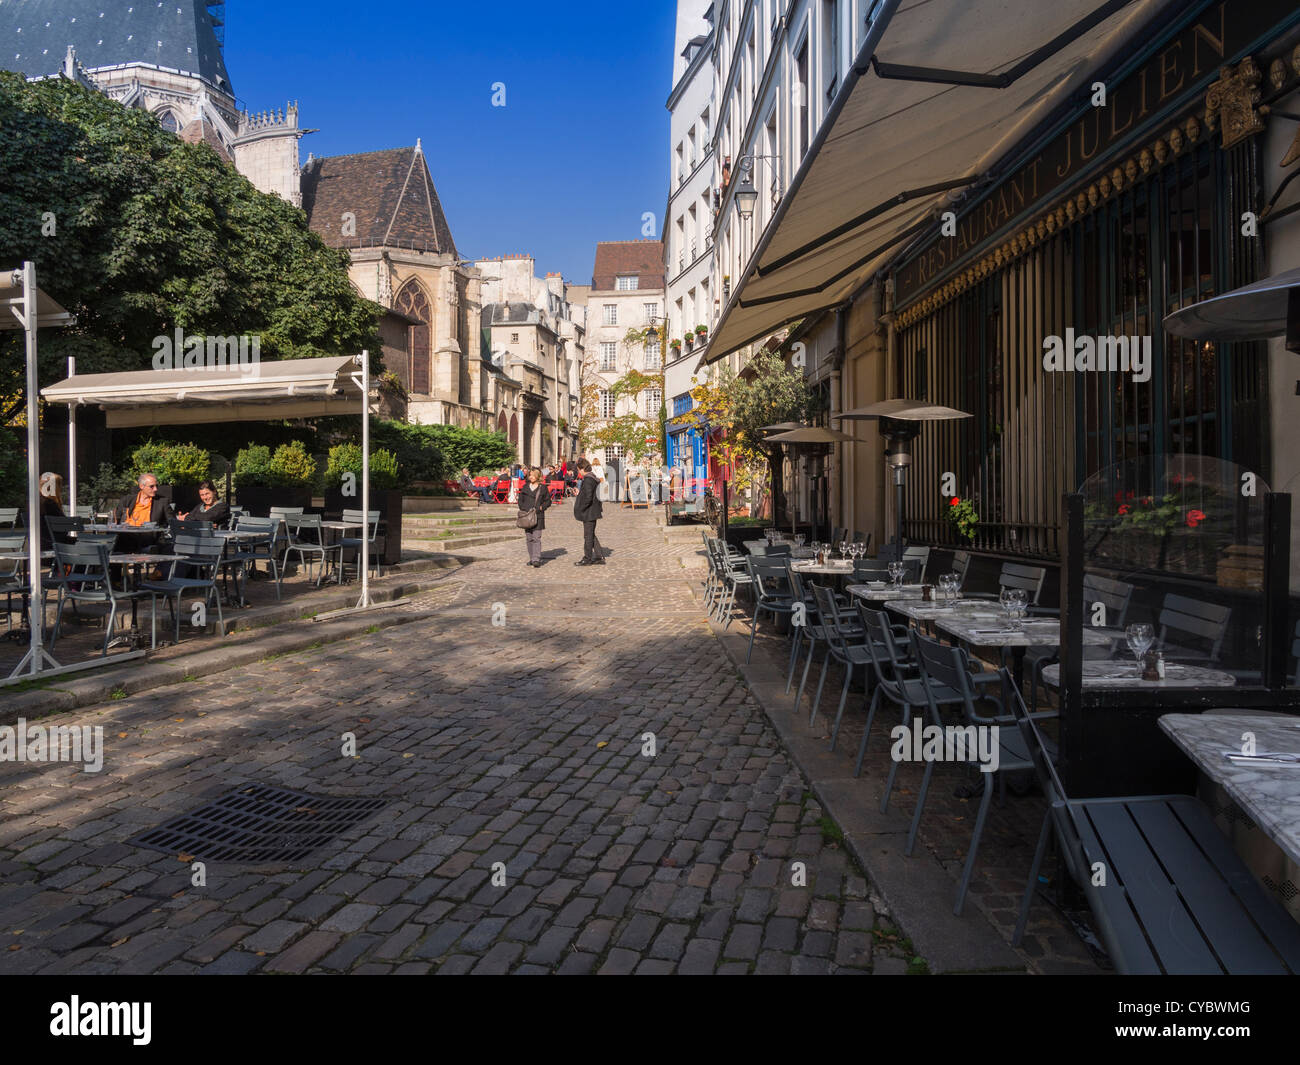 Les cafés de la rue des barres, une cité médiévale rue derrière l'église de St Gervais et St Portais, Paris Banque D'Images